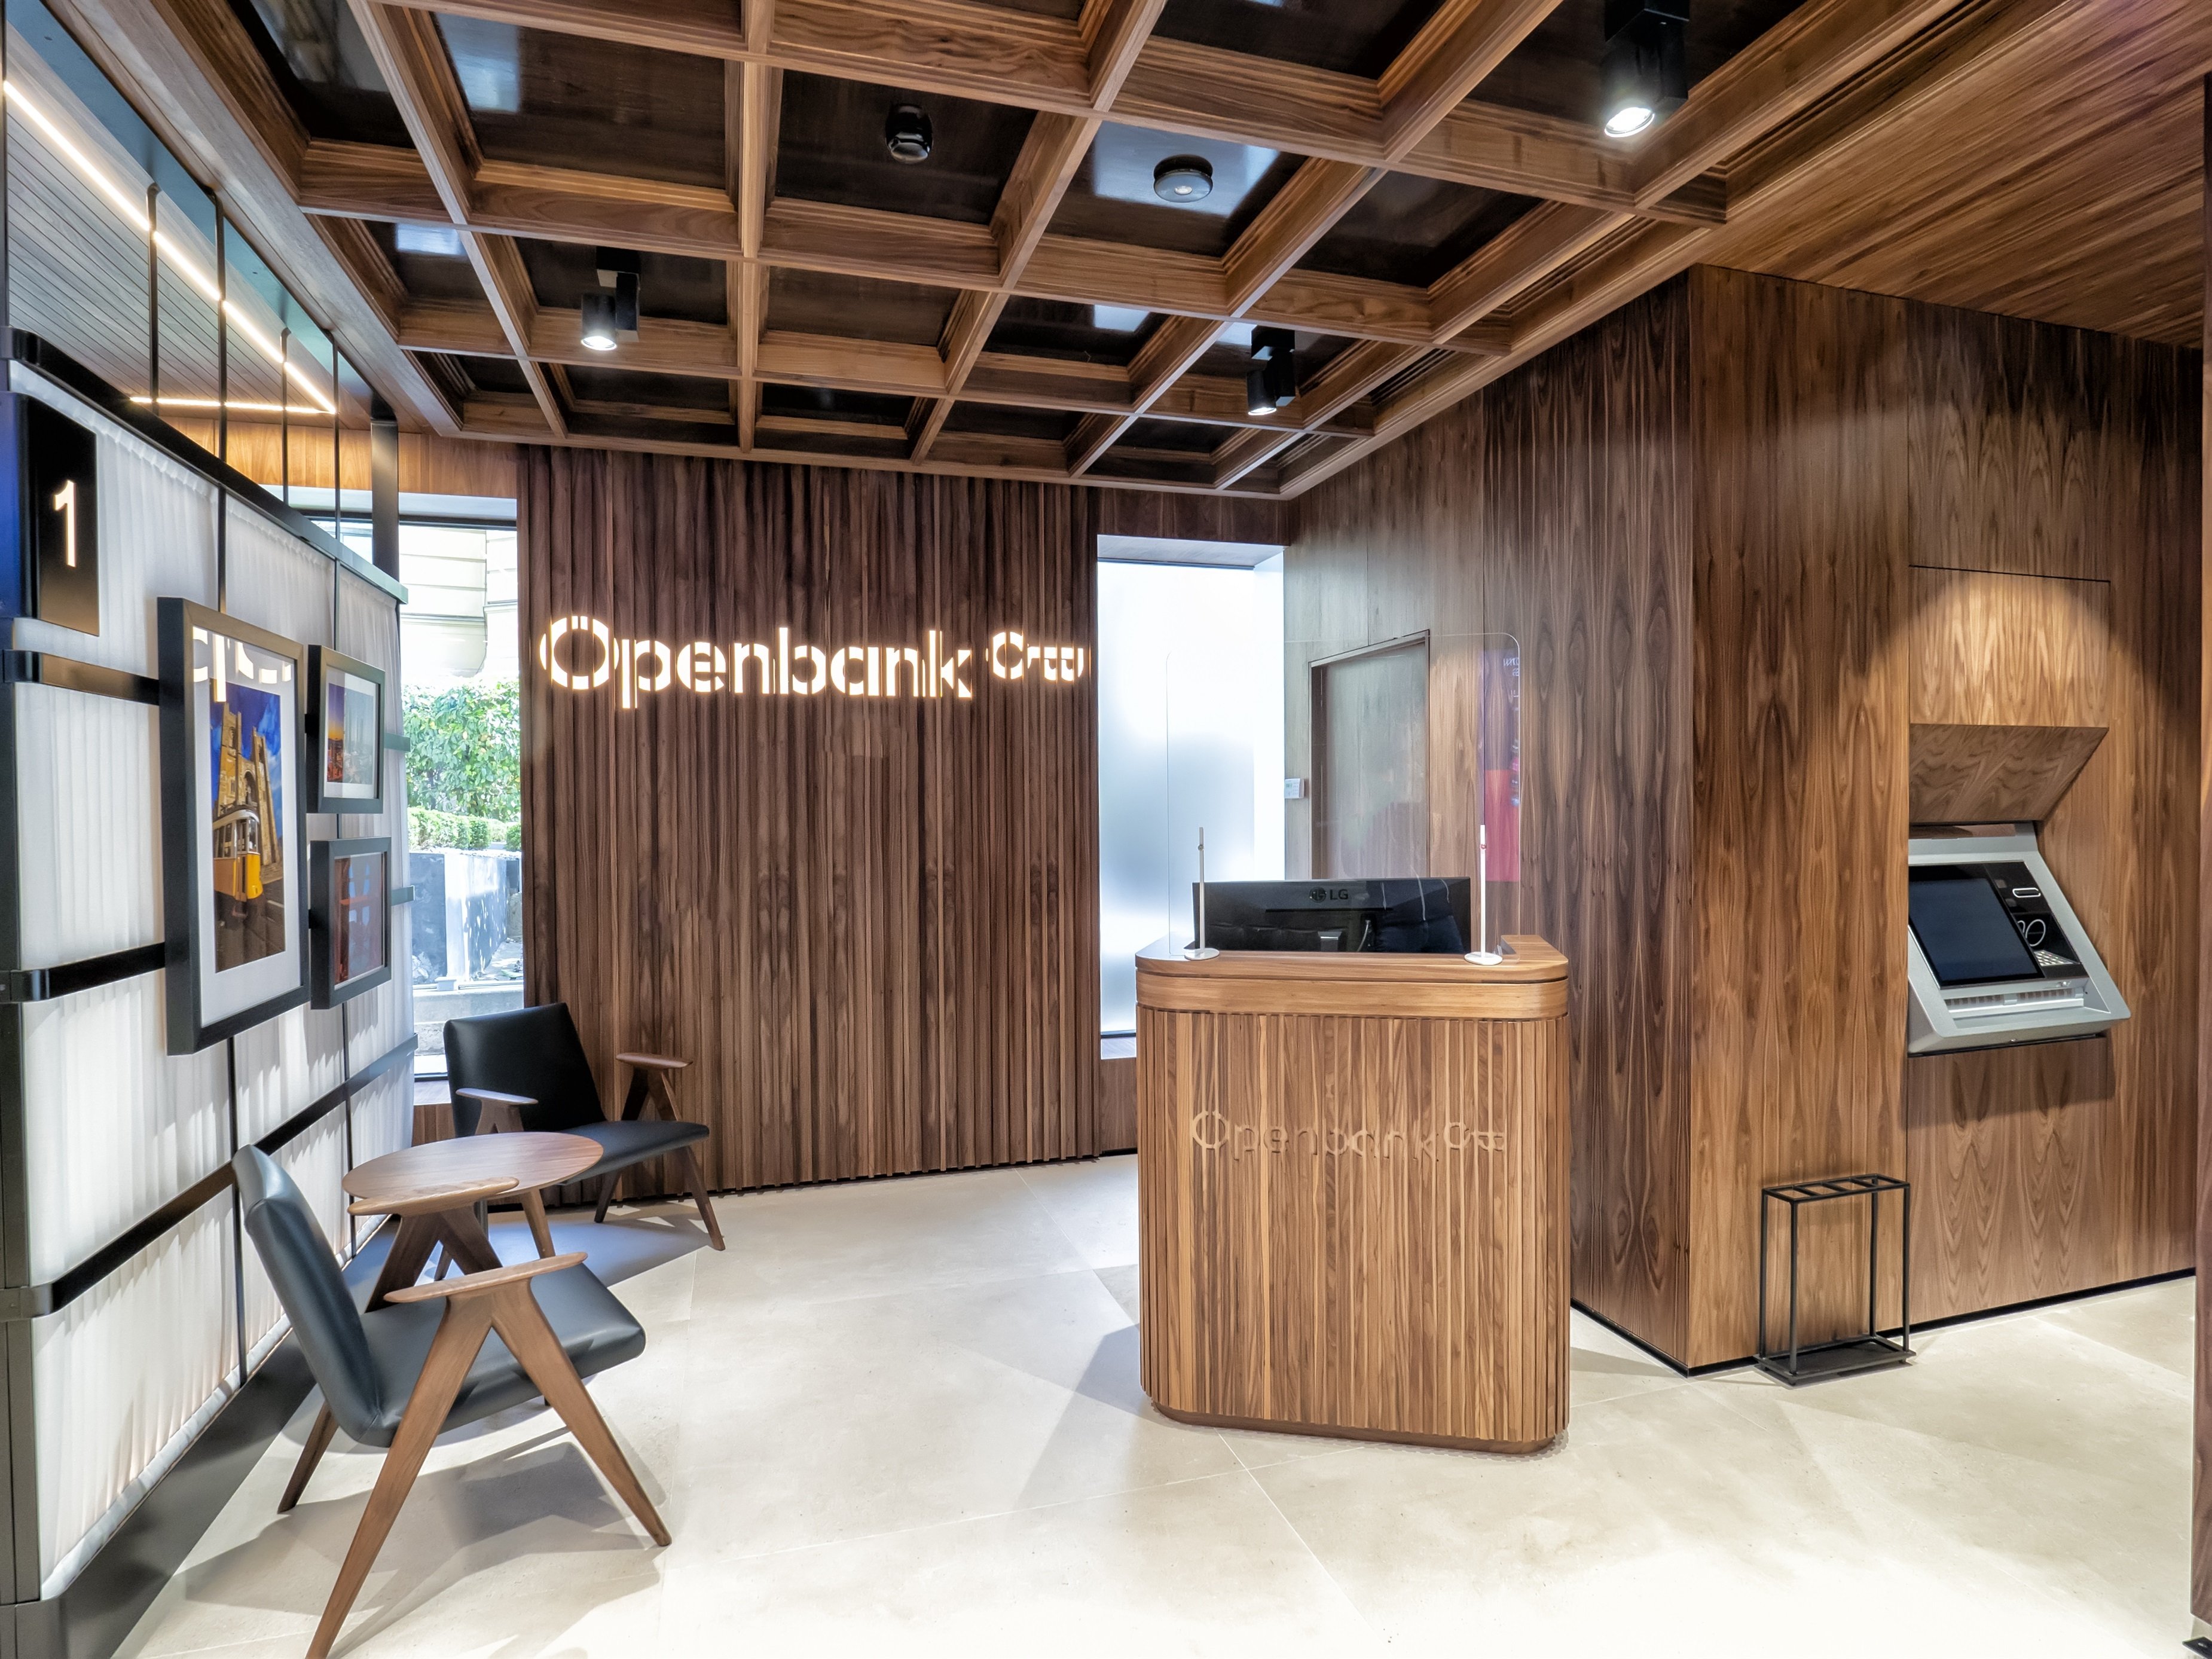 Openbank, Banca March y Targobank se adelantan a los grandes con depósitos al 2%